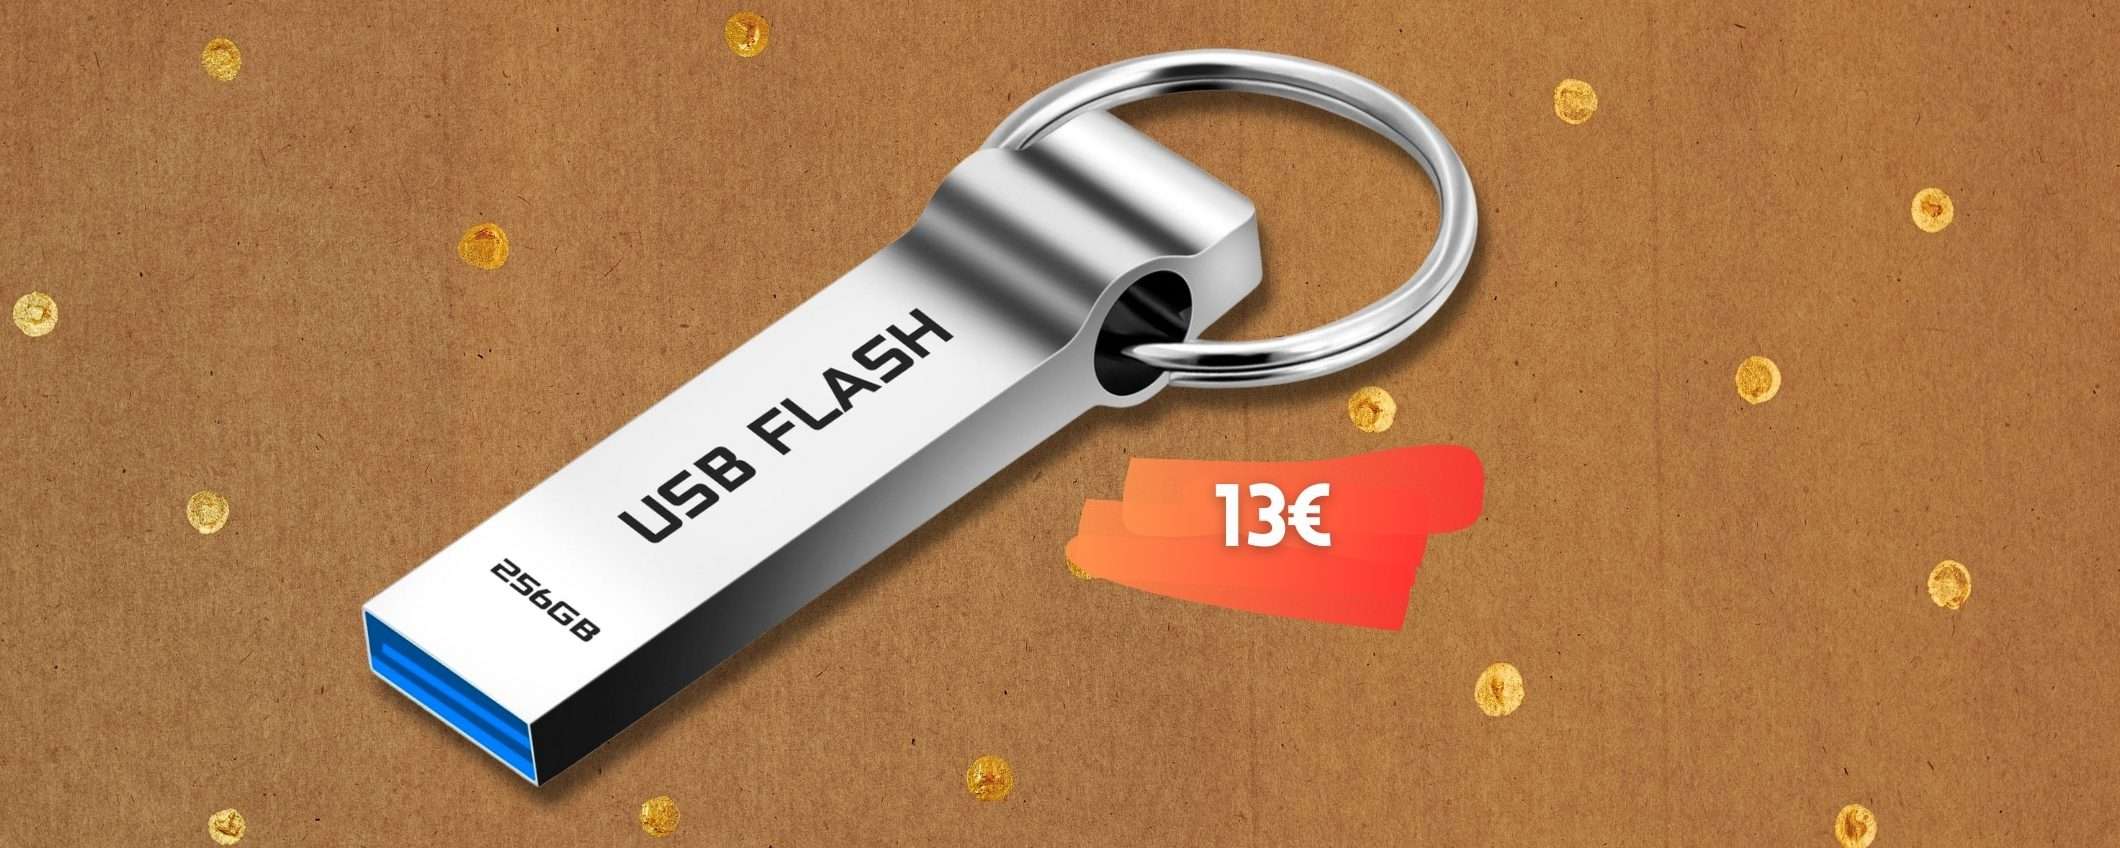 Chiavetta USB 256GB 3.0 in metallo per file al sicuro e A SPASSO (13€)